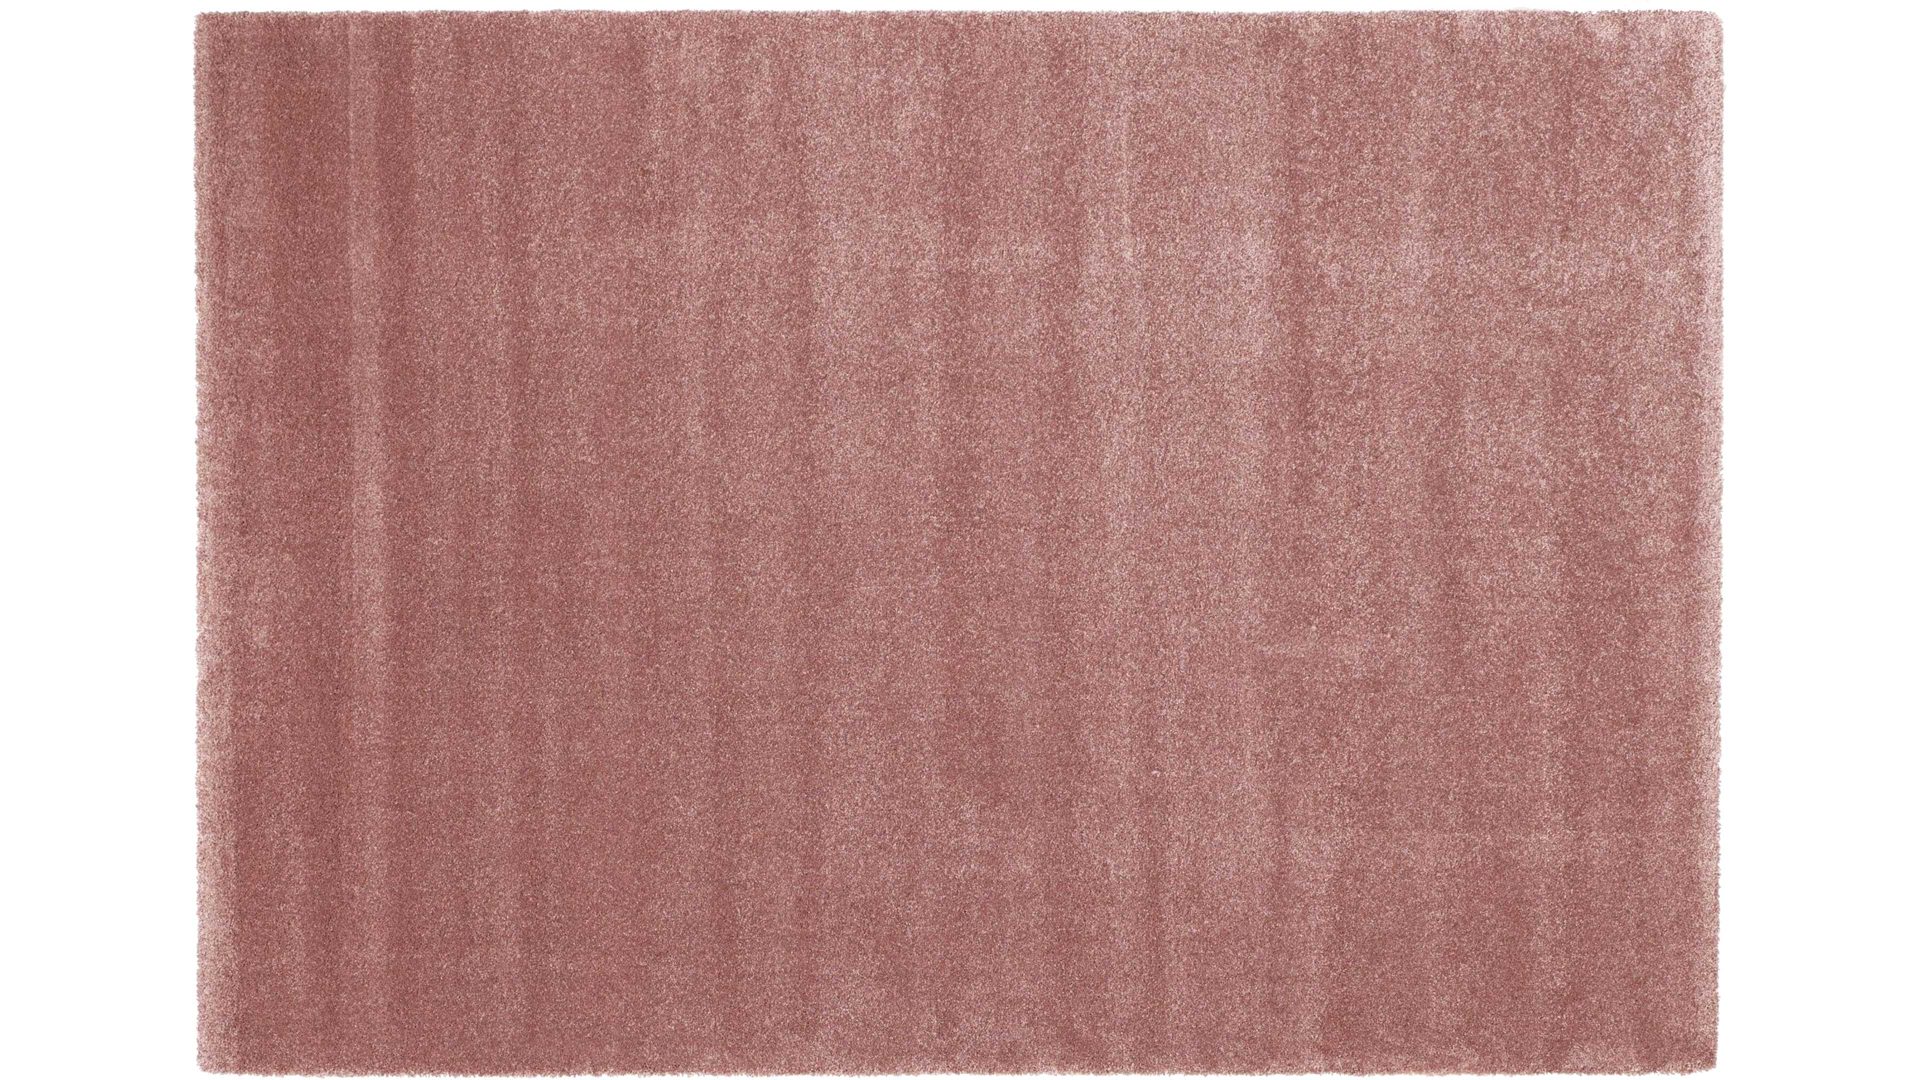 Webteppich Oci aus Kunstfaser in Pastell Webteppich Bellevue für Ihre Wohnaccessoires rosenholzfarbene Kunstfaser – ca. 140 x 200 cm